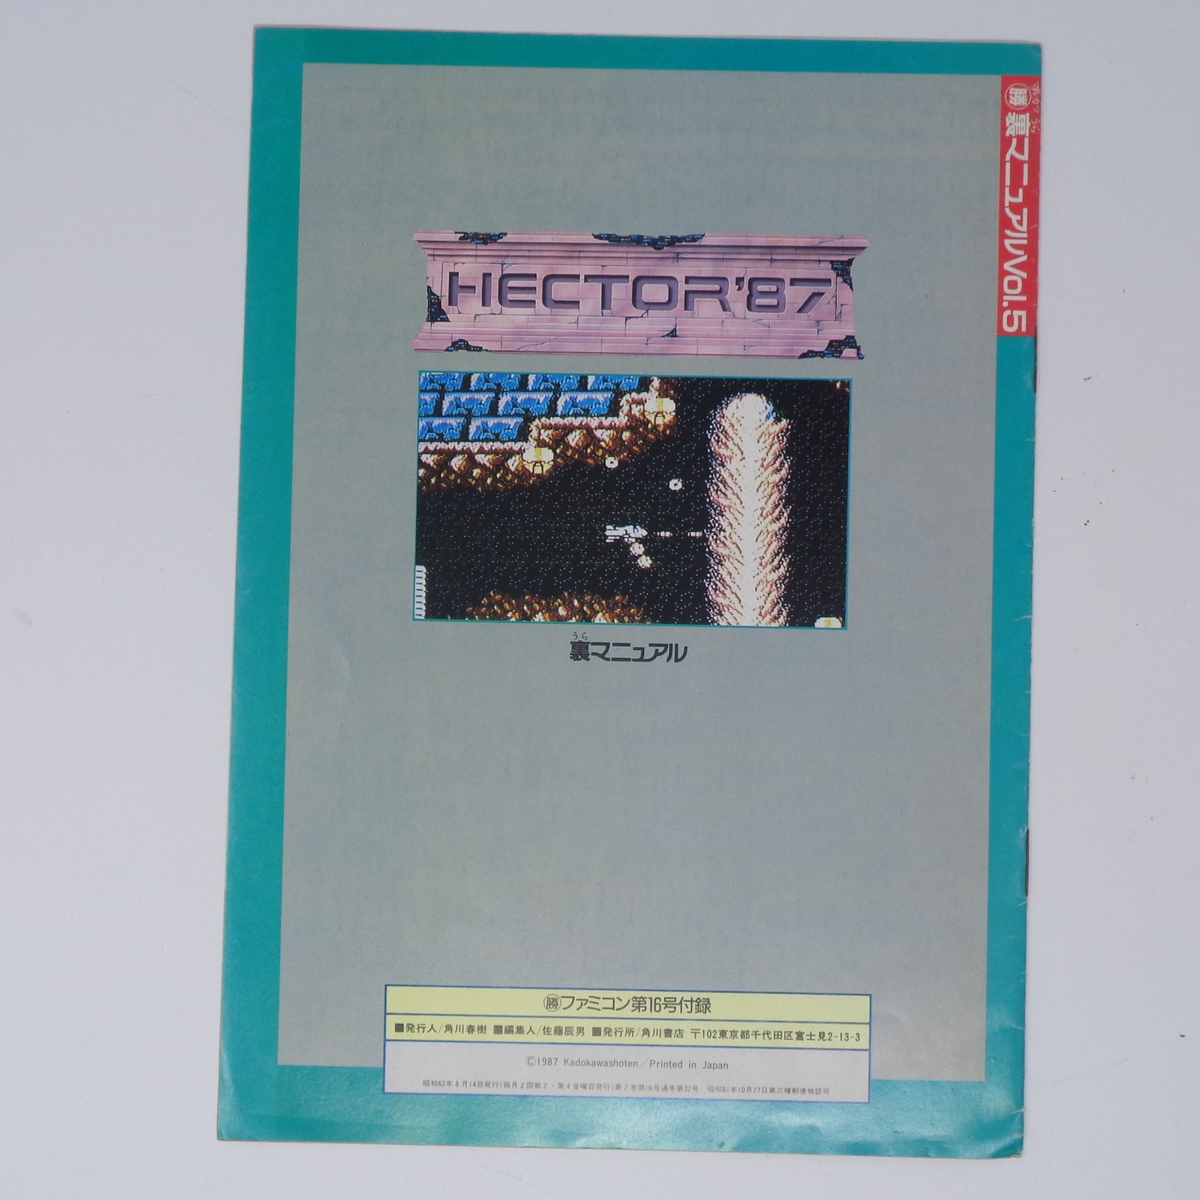 HECTOR'87 裏マニュアル マルカツファミコン 1987年8月14日号Vol.16別冊付録/12ページ/ゲーム雑誌付録[Free Shipping]